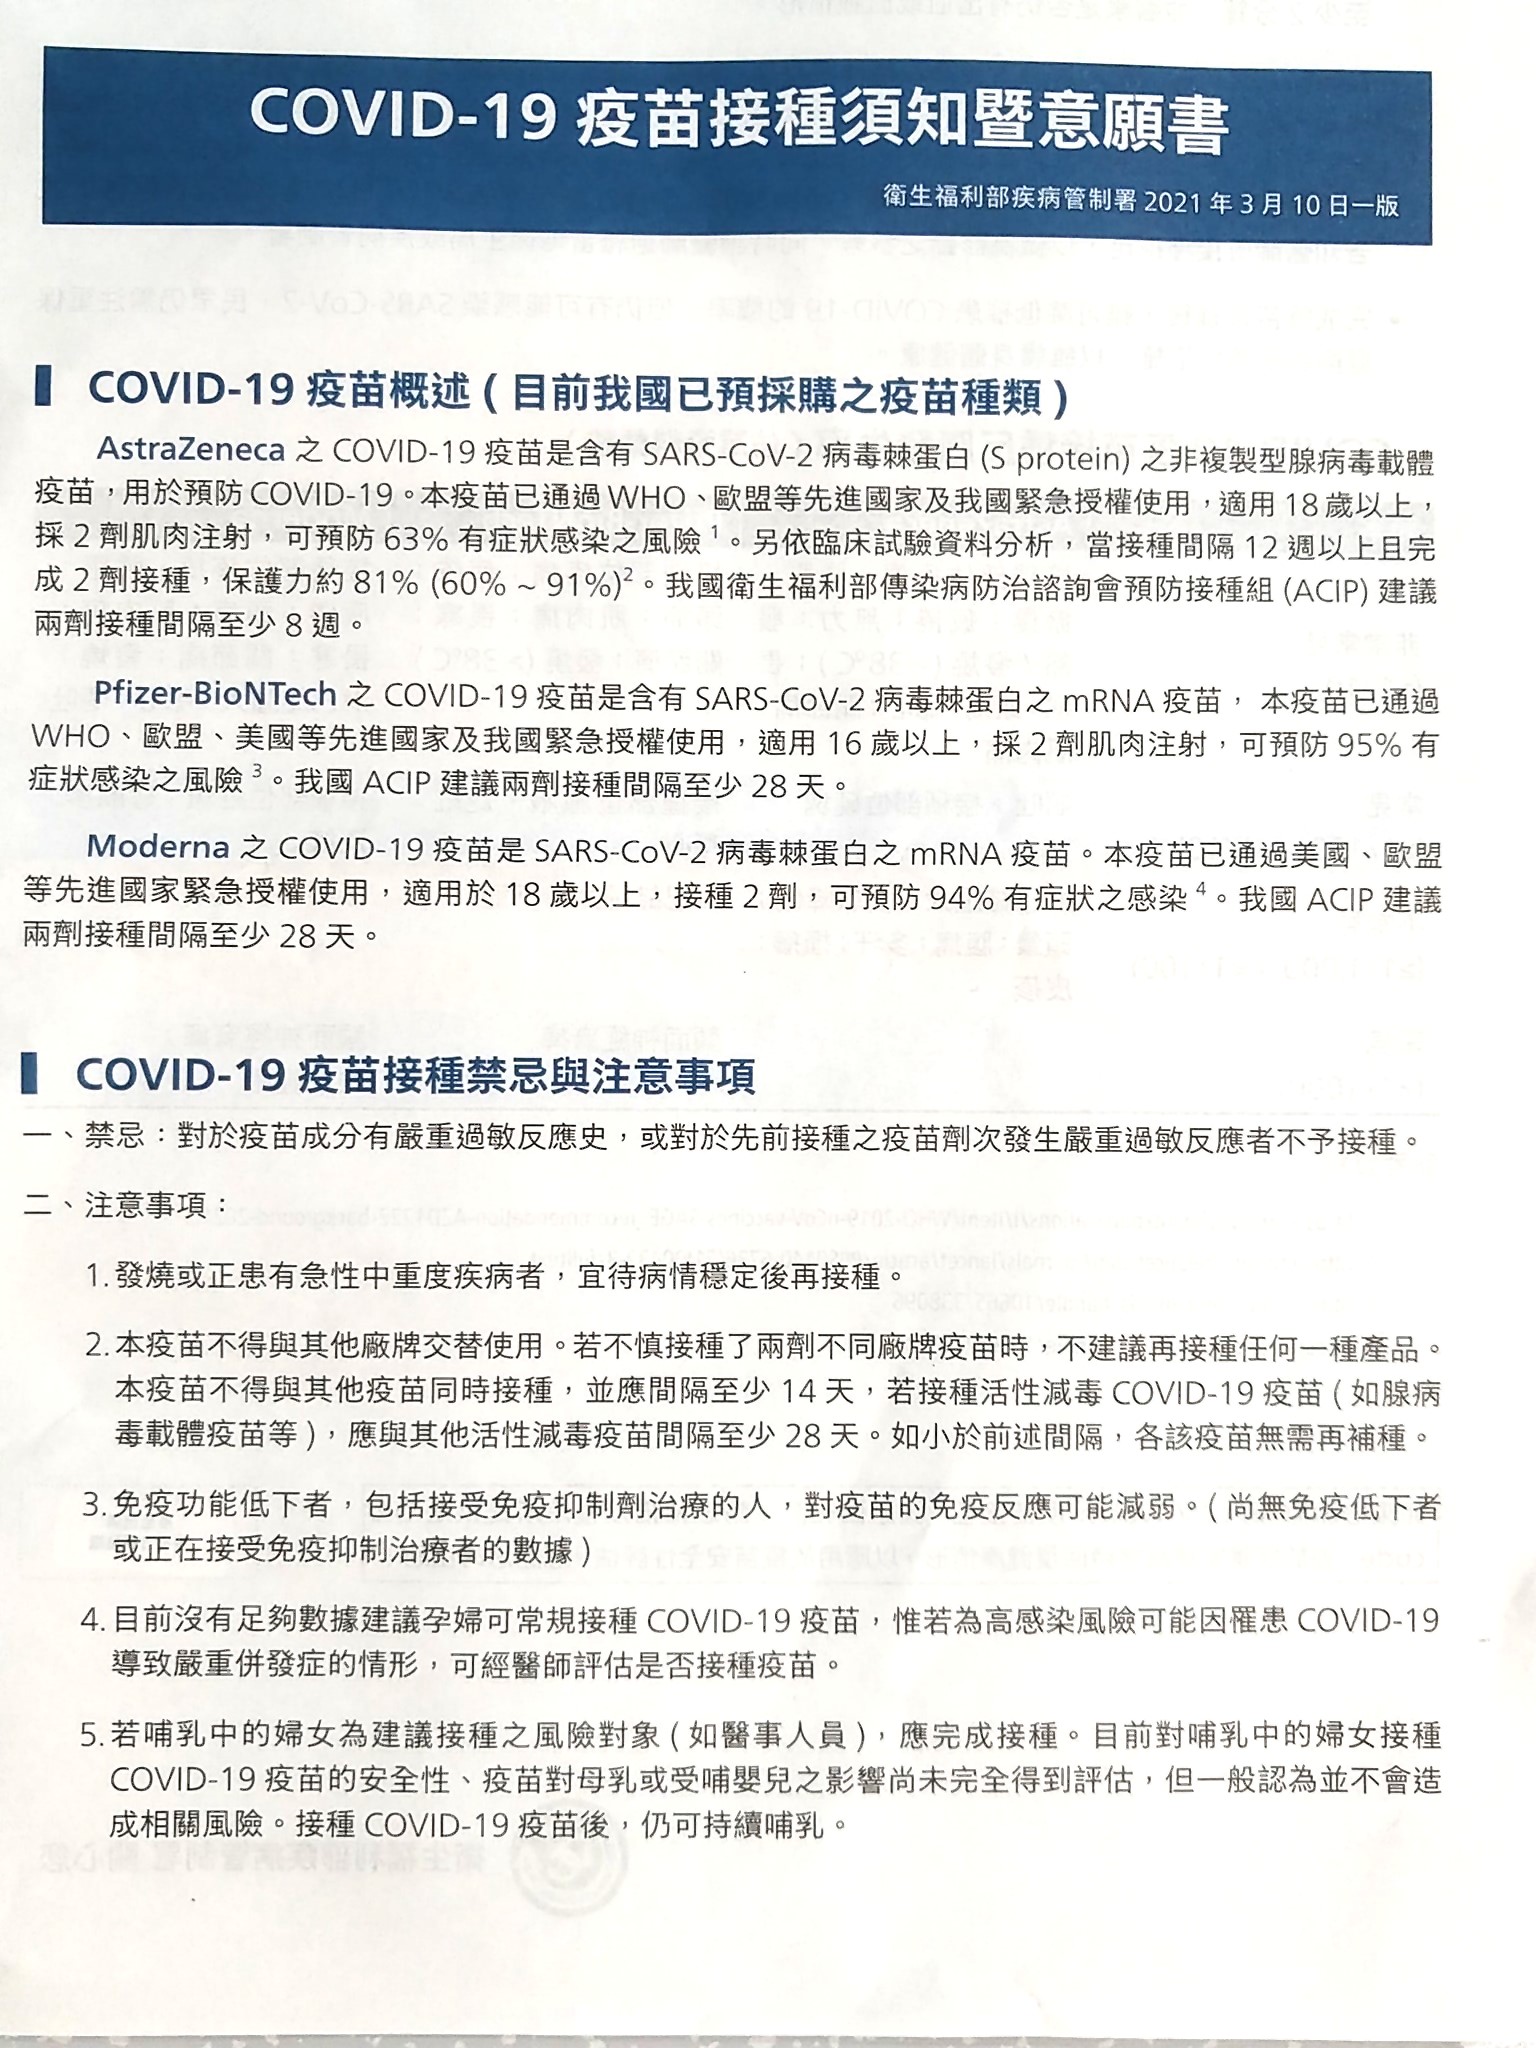 【紙本】COVID-19疫苗接種需知暨意願書(20210310一版).jpg